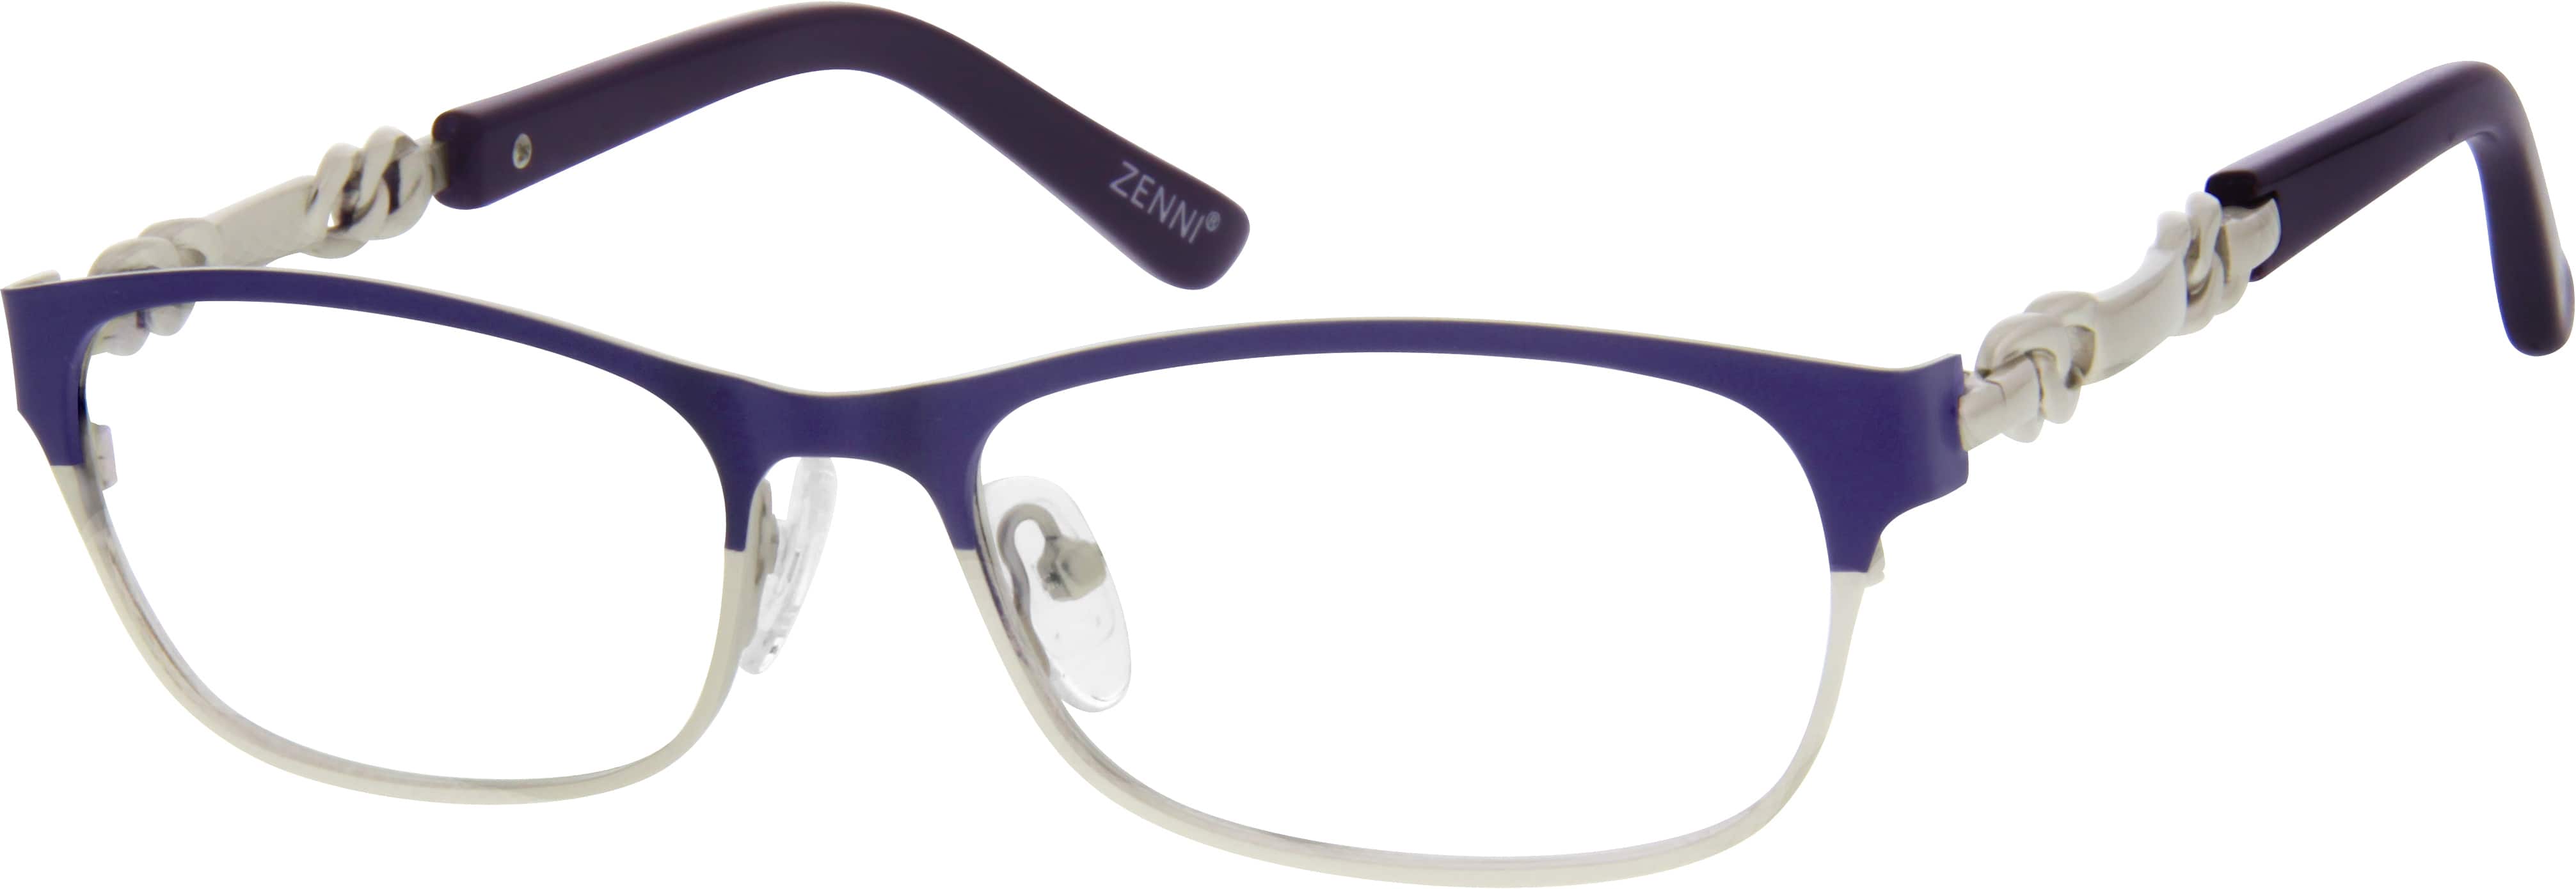 Purple Stainless Steel Full Rim Frame 1654 Zenni Optical Eyeglasses